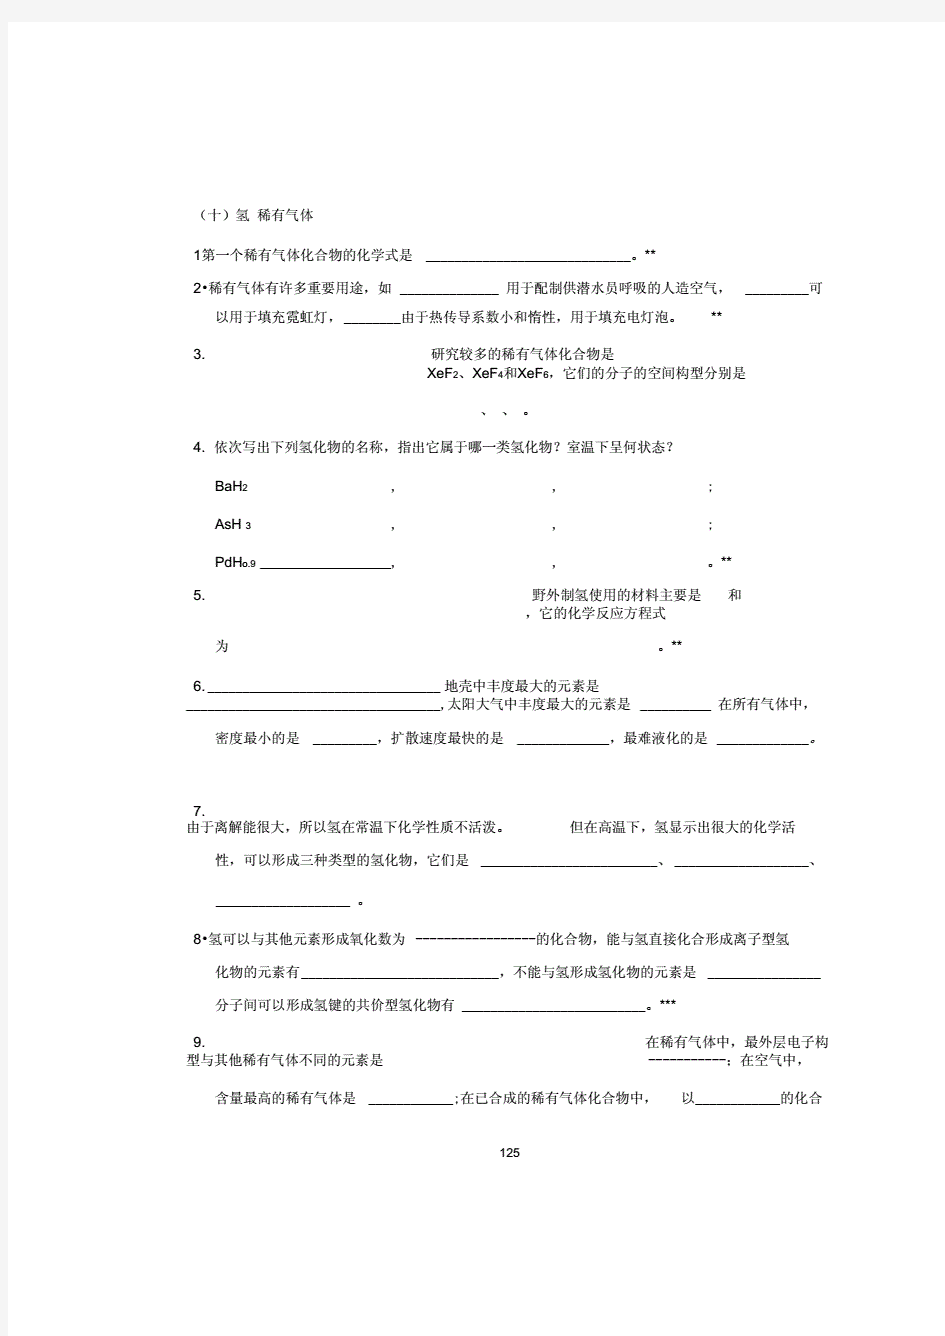 无机化学万题库(填空题)(10-15).pdf